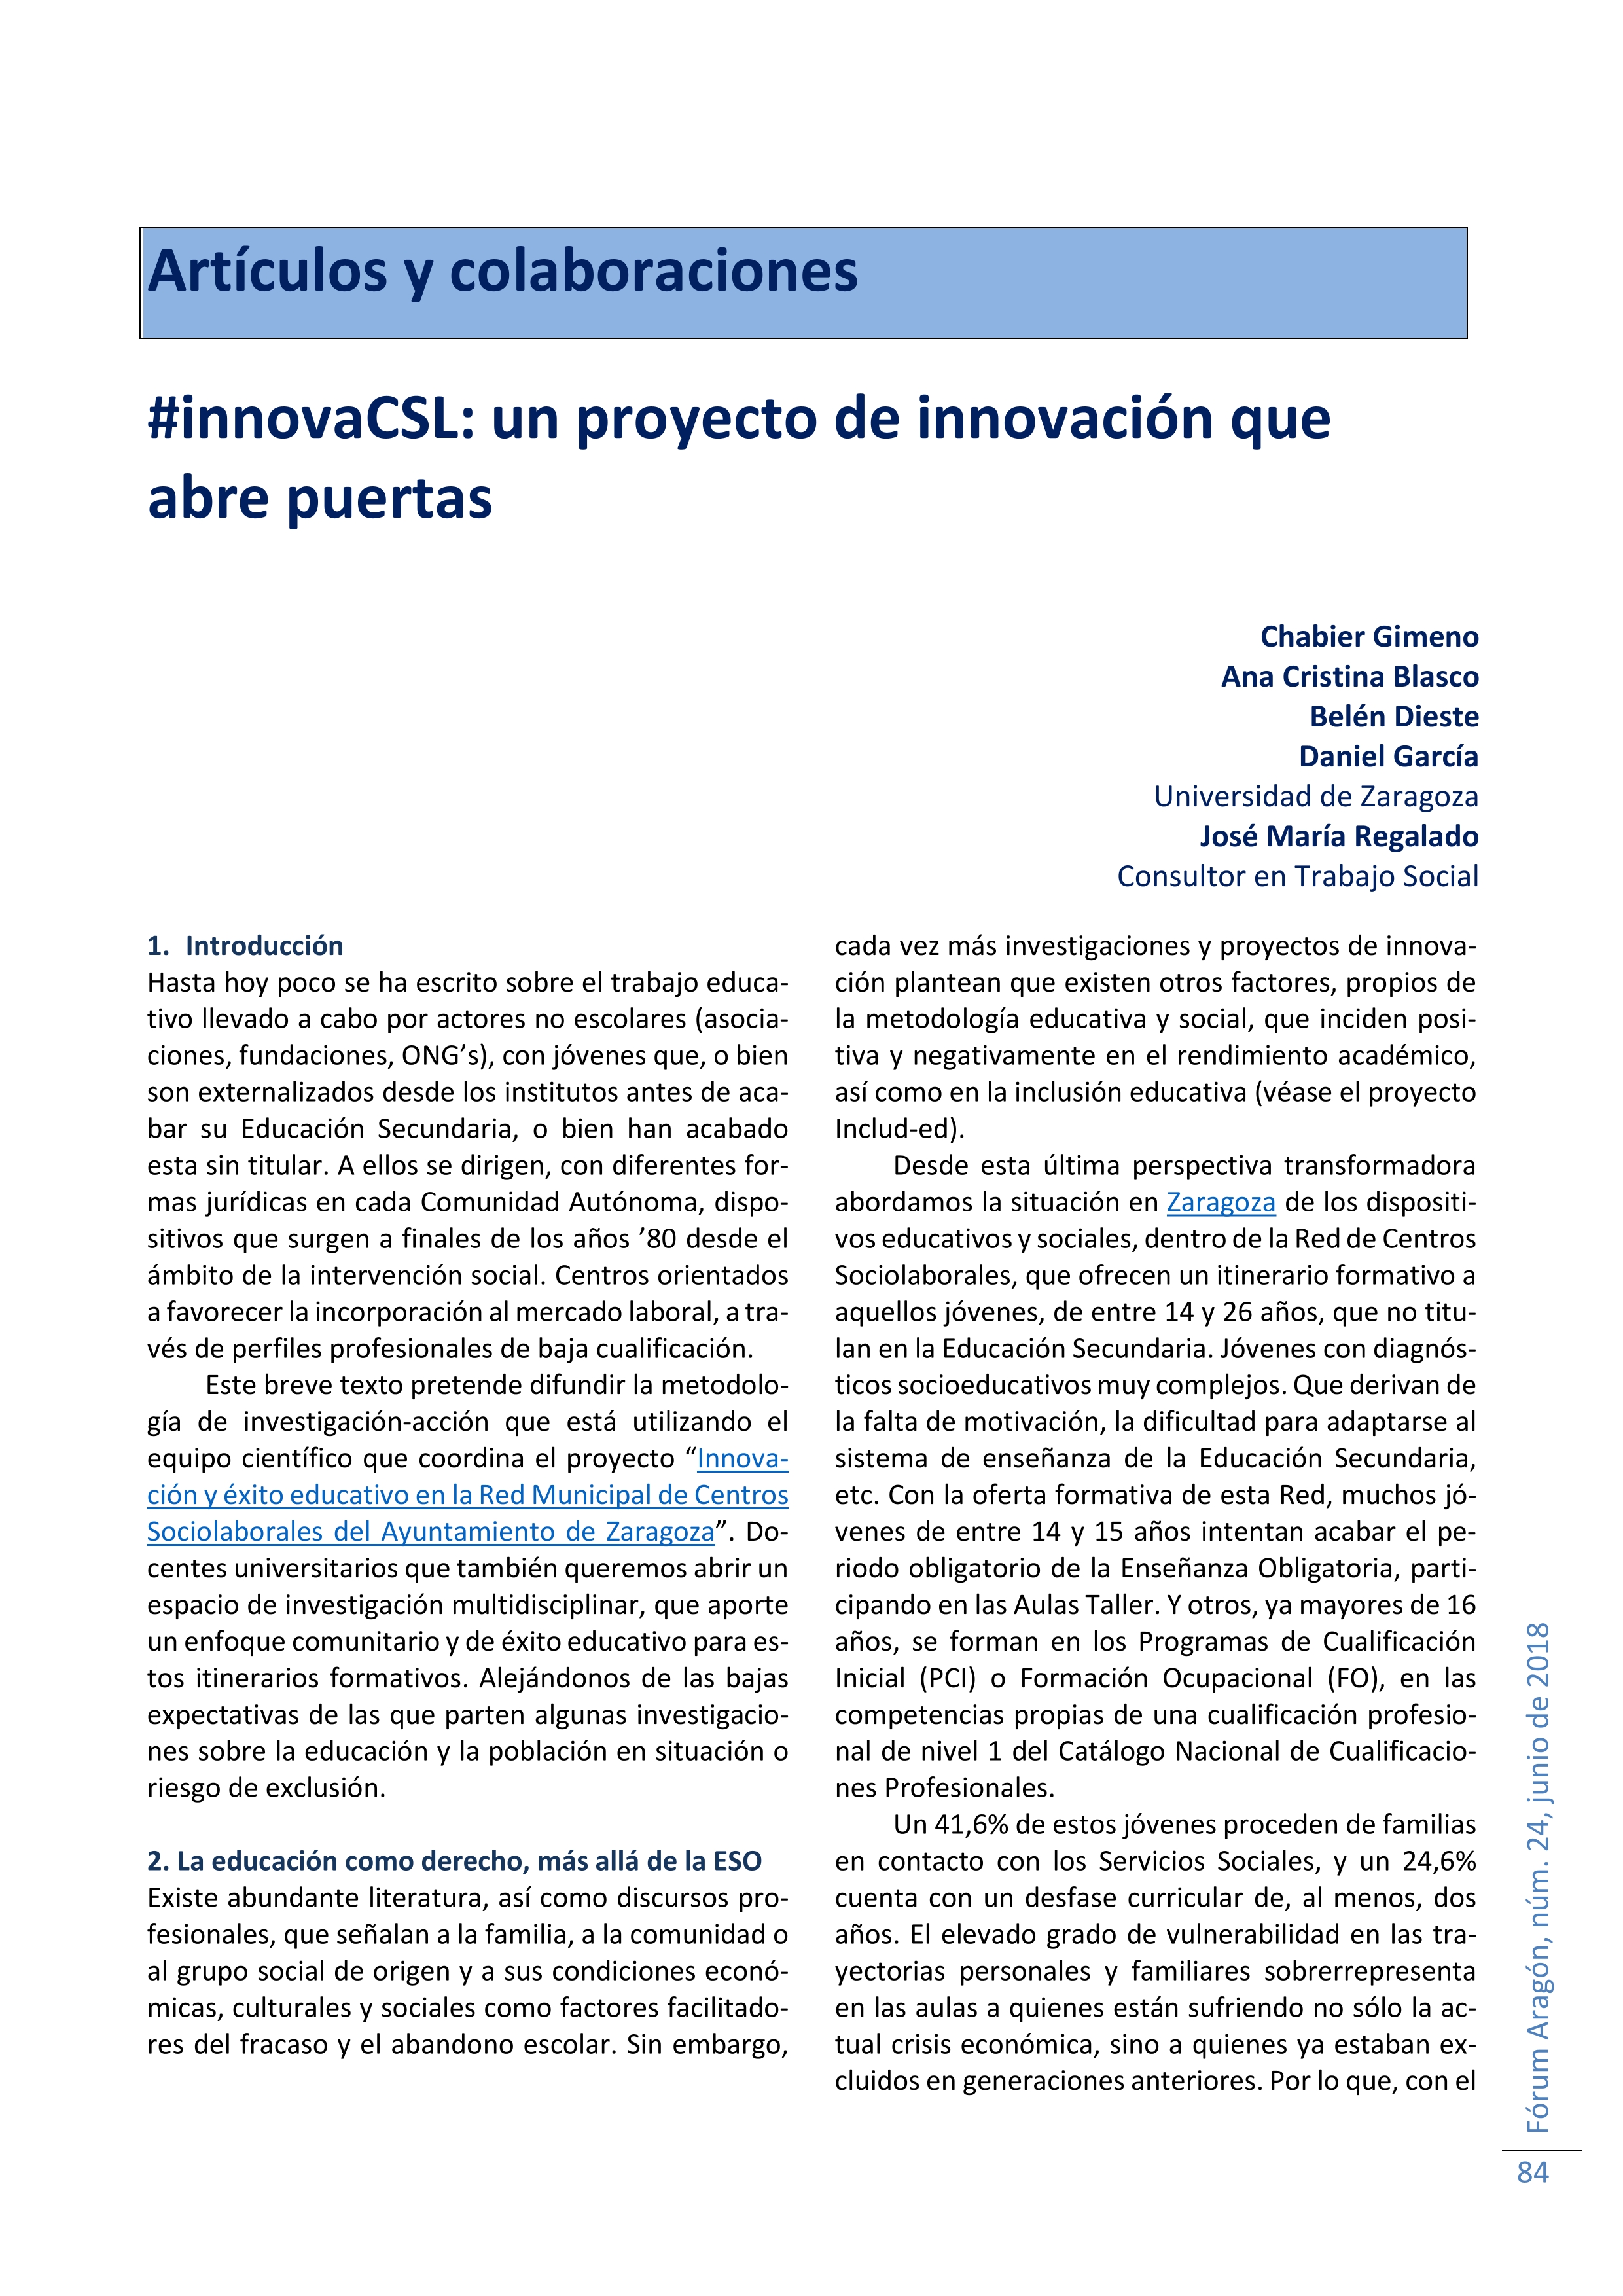 #innovaCSL: un proyecto de innovación que abre puertas